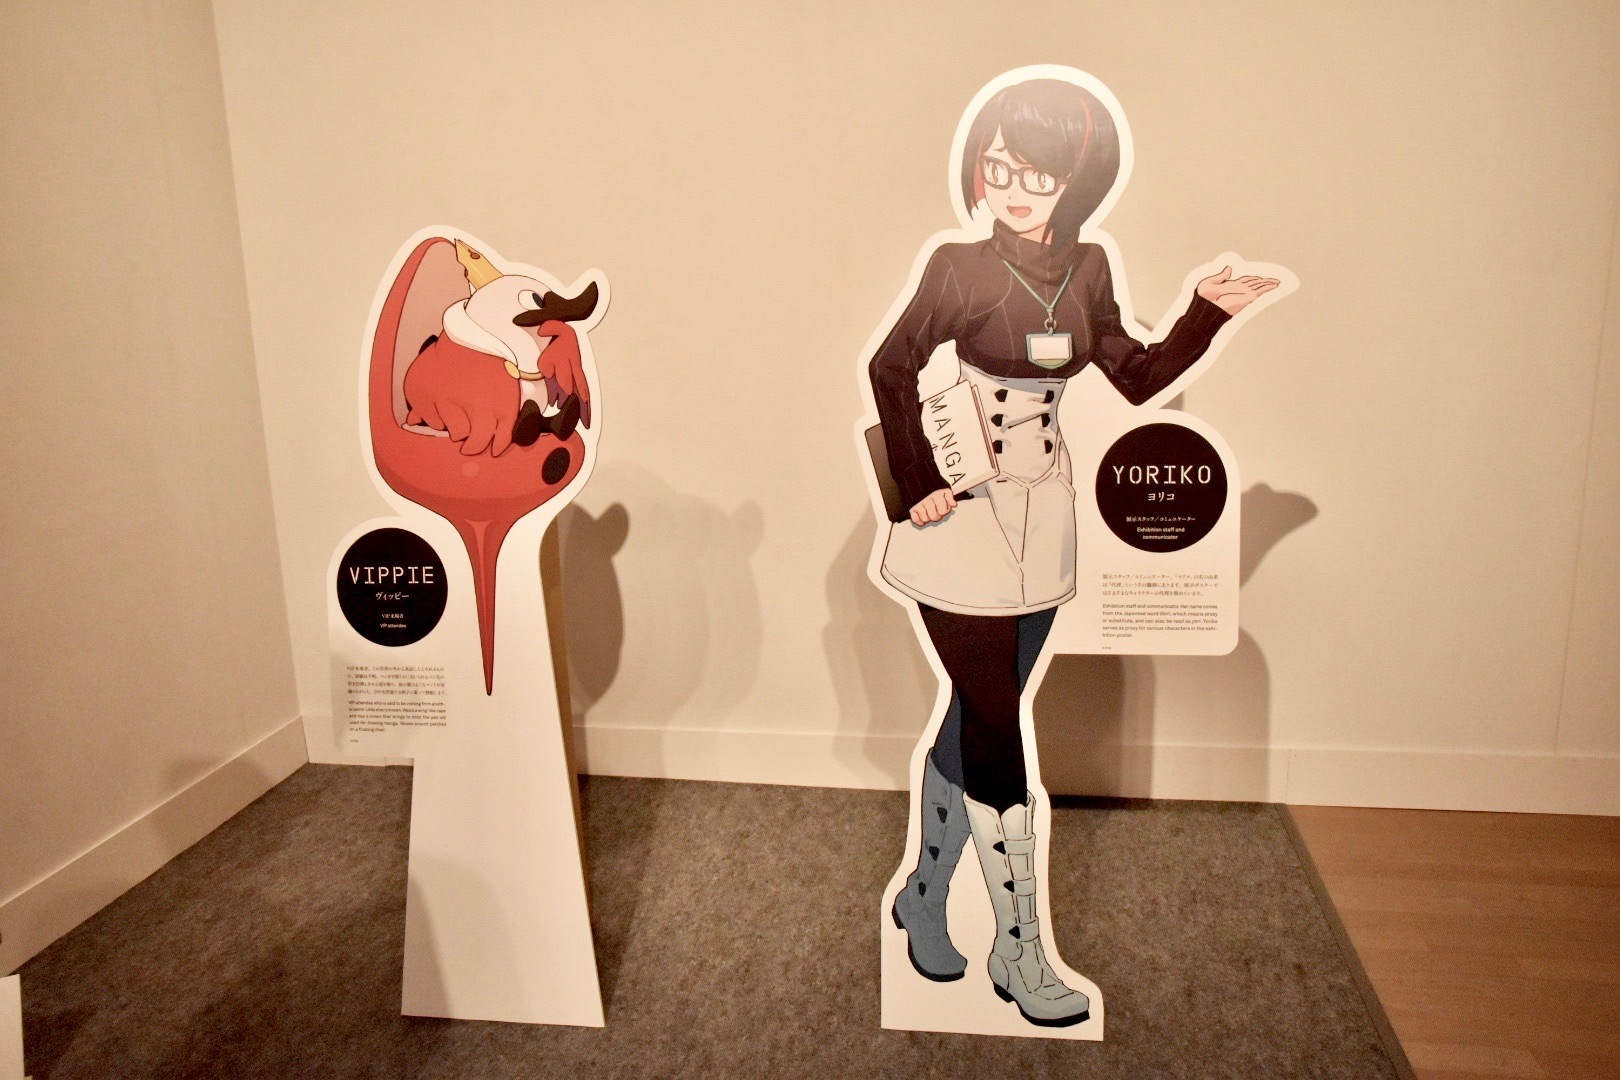 本展オリジナルキャラクターのヨリコ（右）とその相方ヴィッピー（左）。キャラクターデザインを手がけたのは吉成曜（トリガー所属）